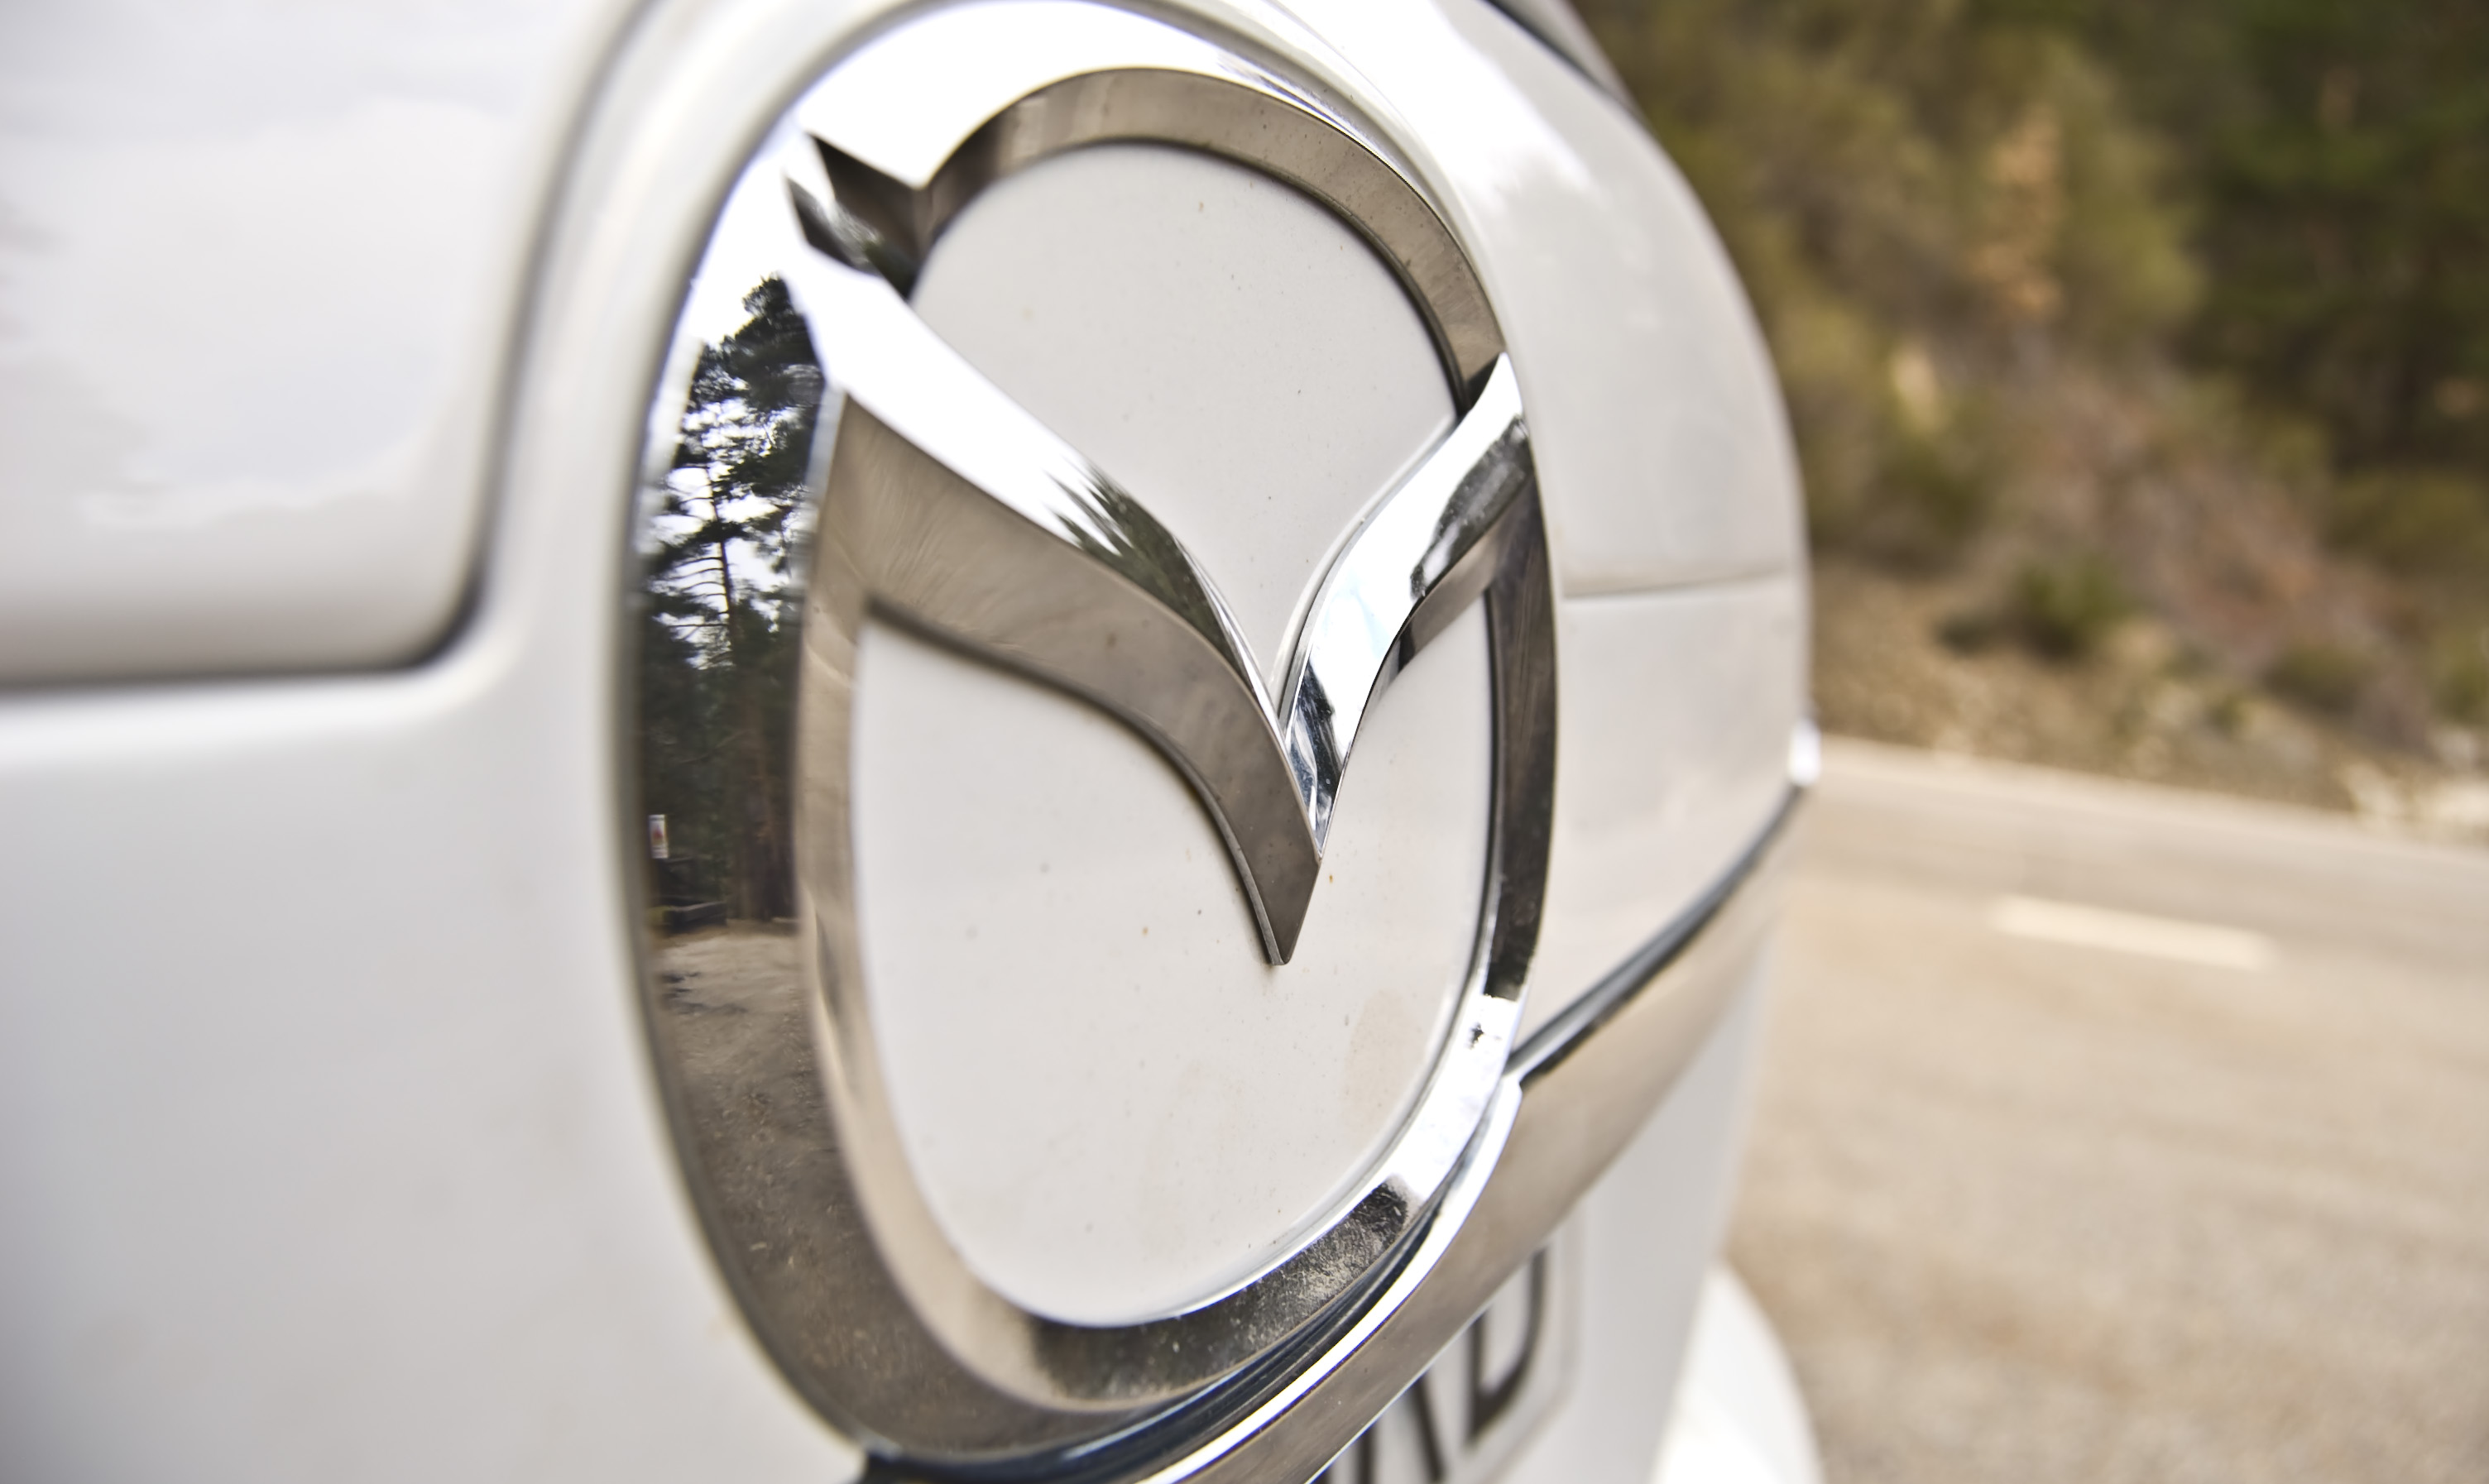 Silnik HCCI - Mazda stworzyła oszczędny silnik spalinowy